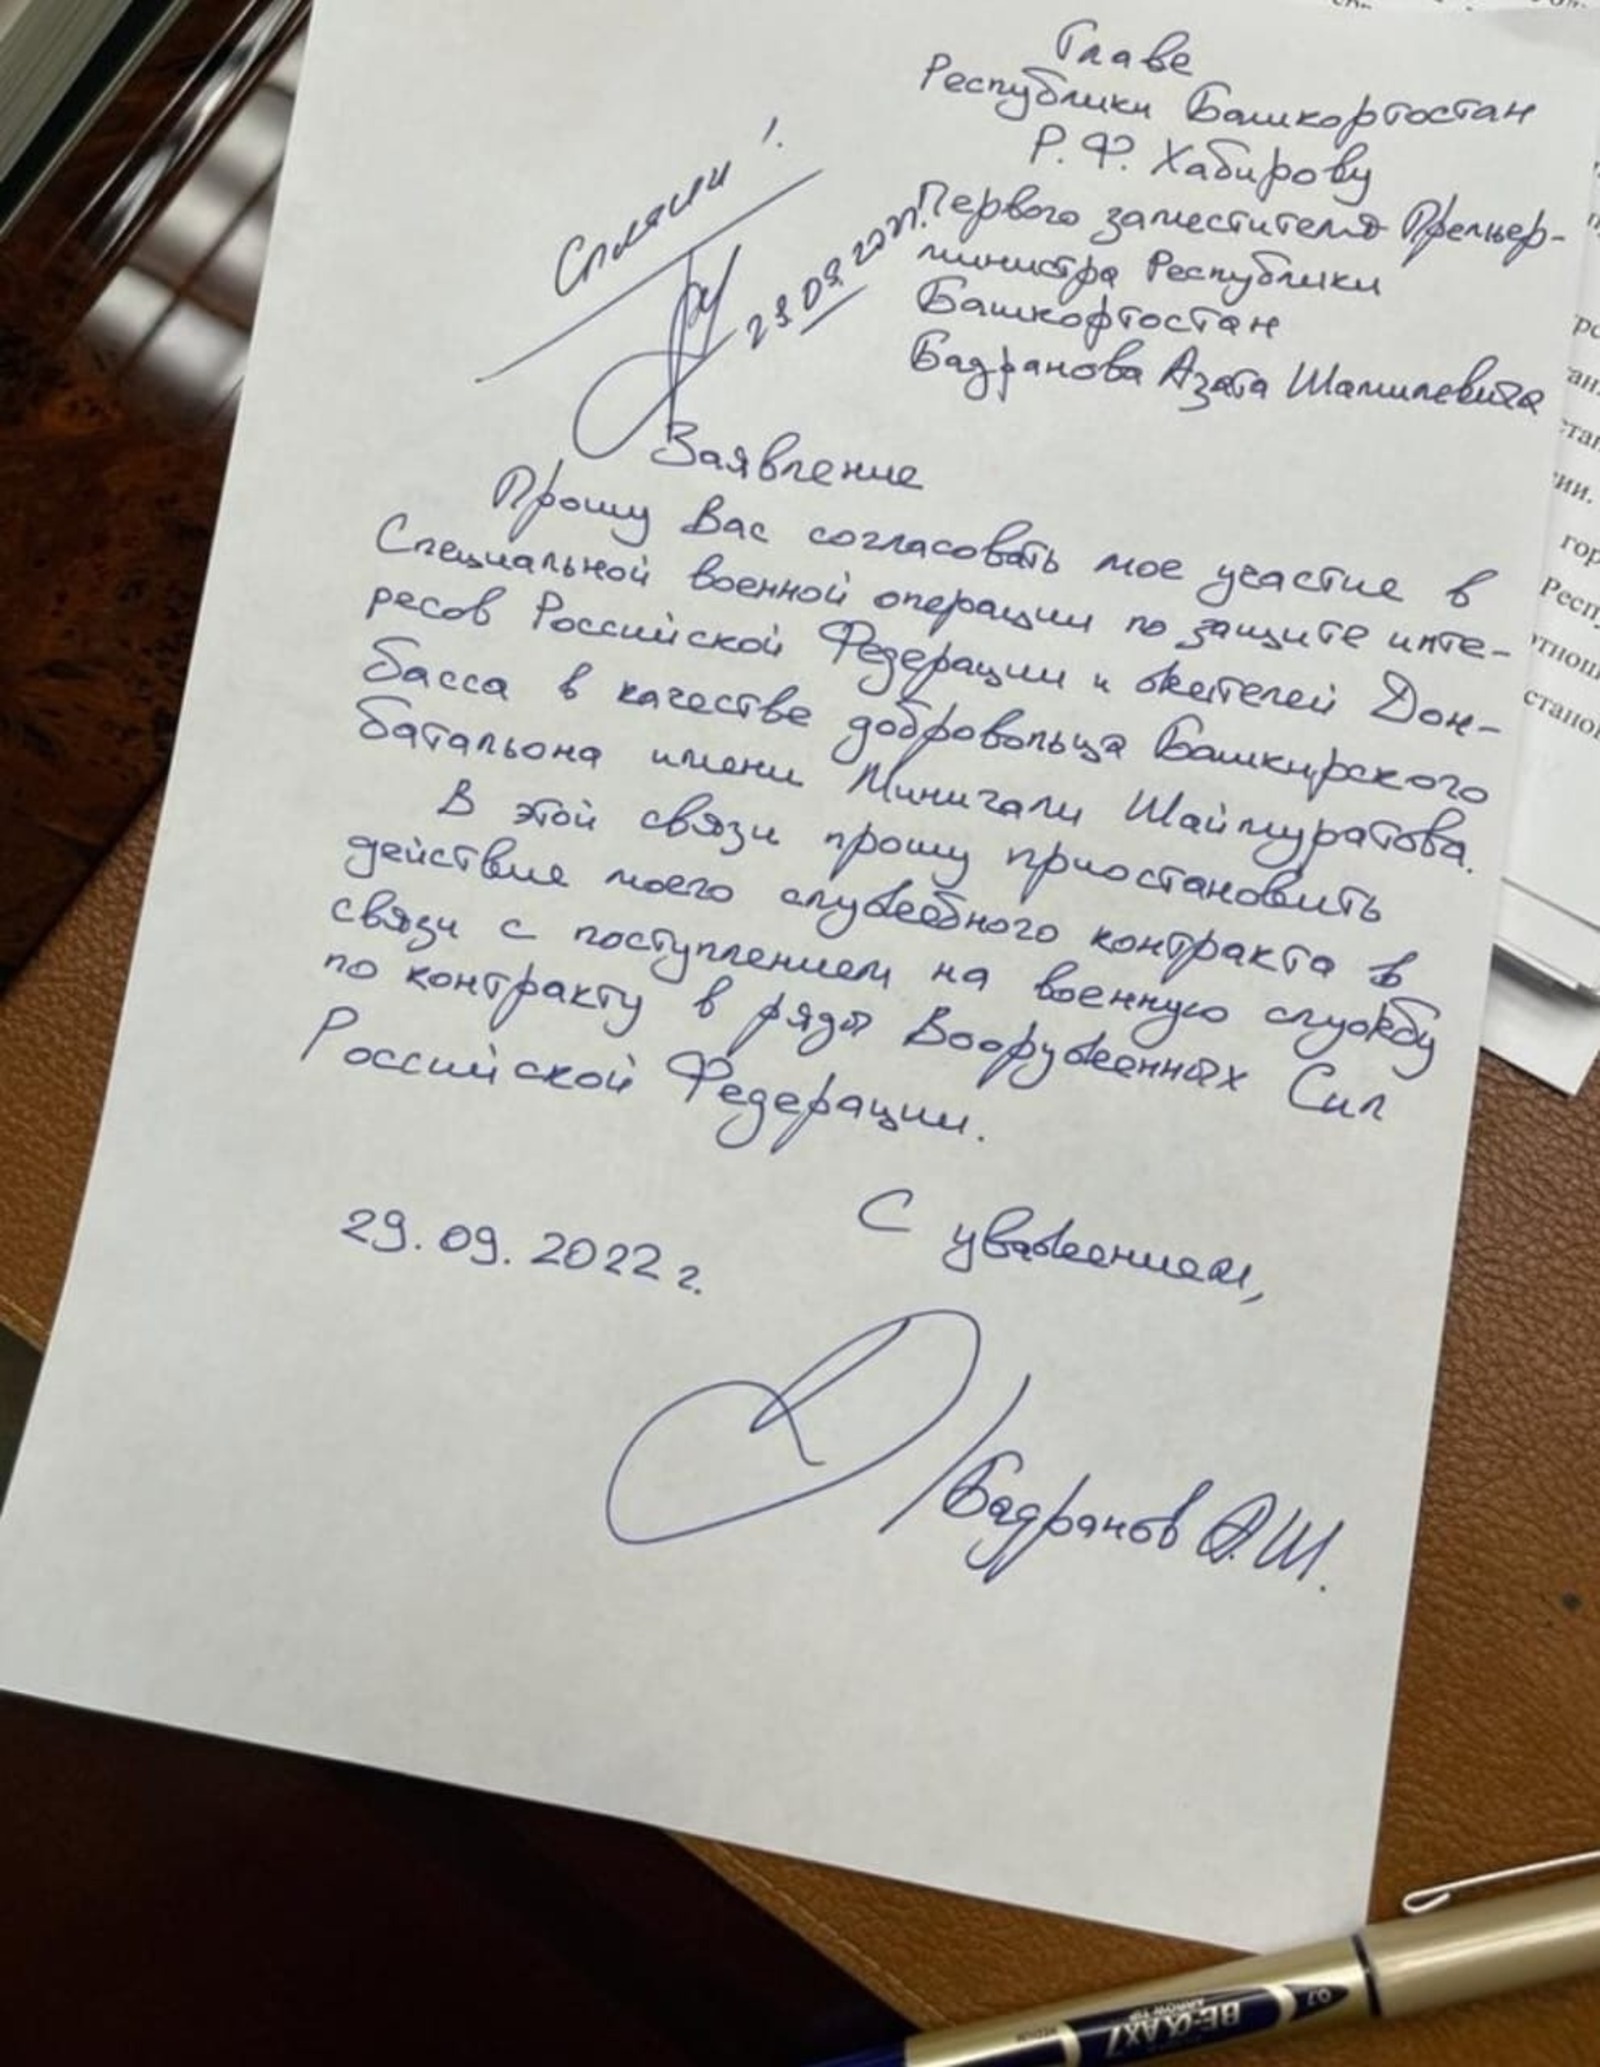 Первый вице-премьер правительства Башкирии уходит добровольцем на СВО